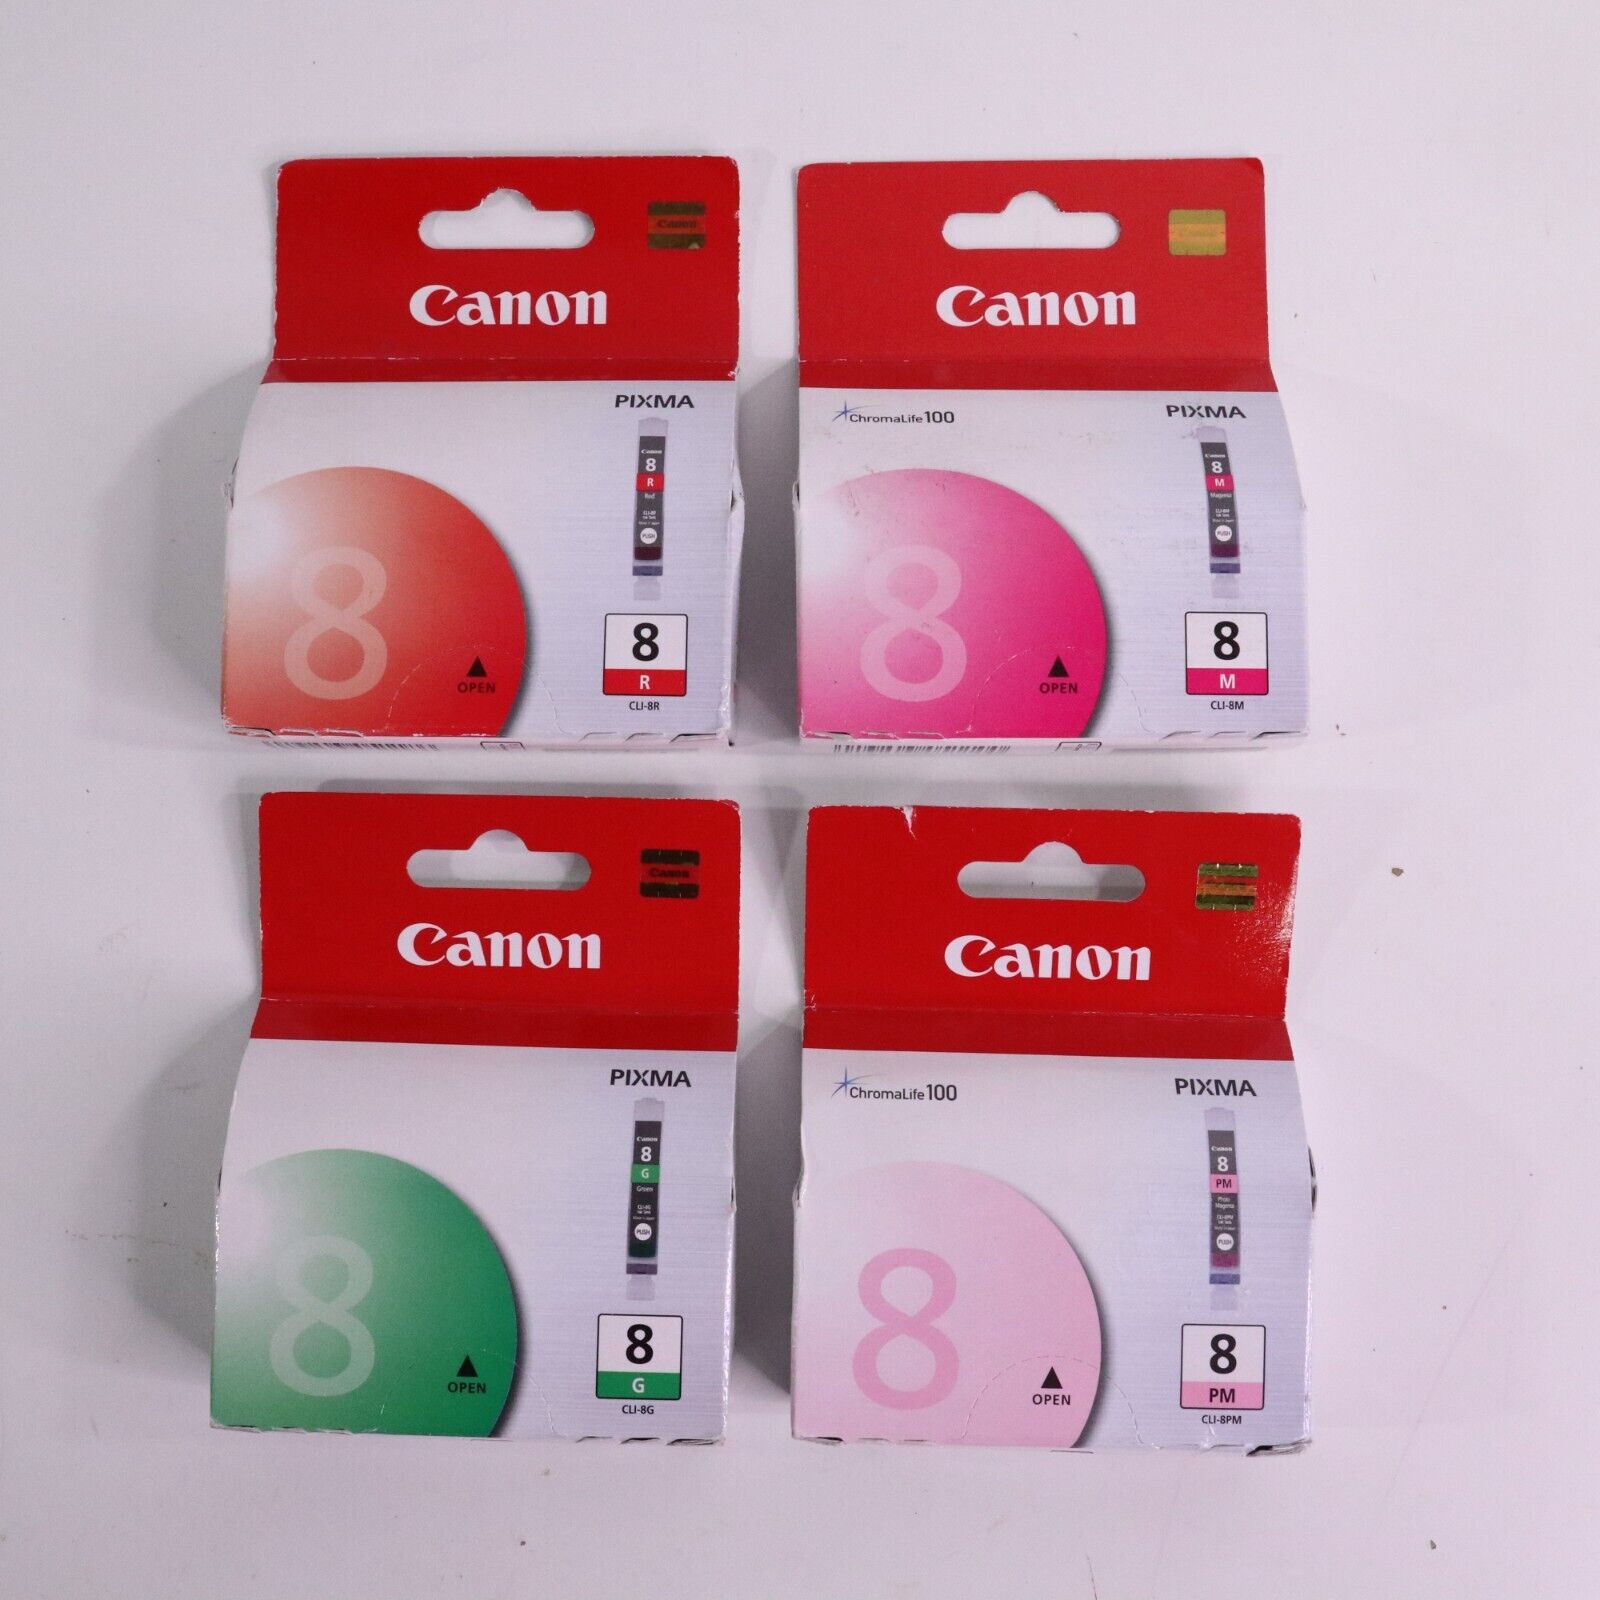 Lot of 4 Genuine Canon Pixma CLI-8M, CLI-8G, CLI-8PM, CLI-8R Ink Cartridges New